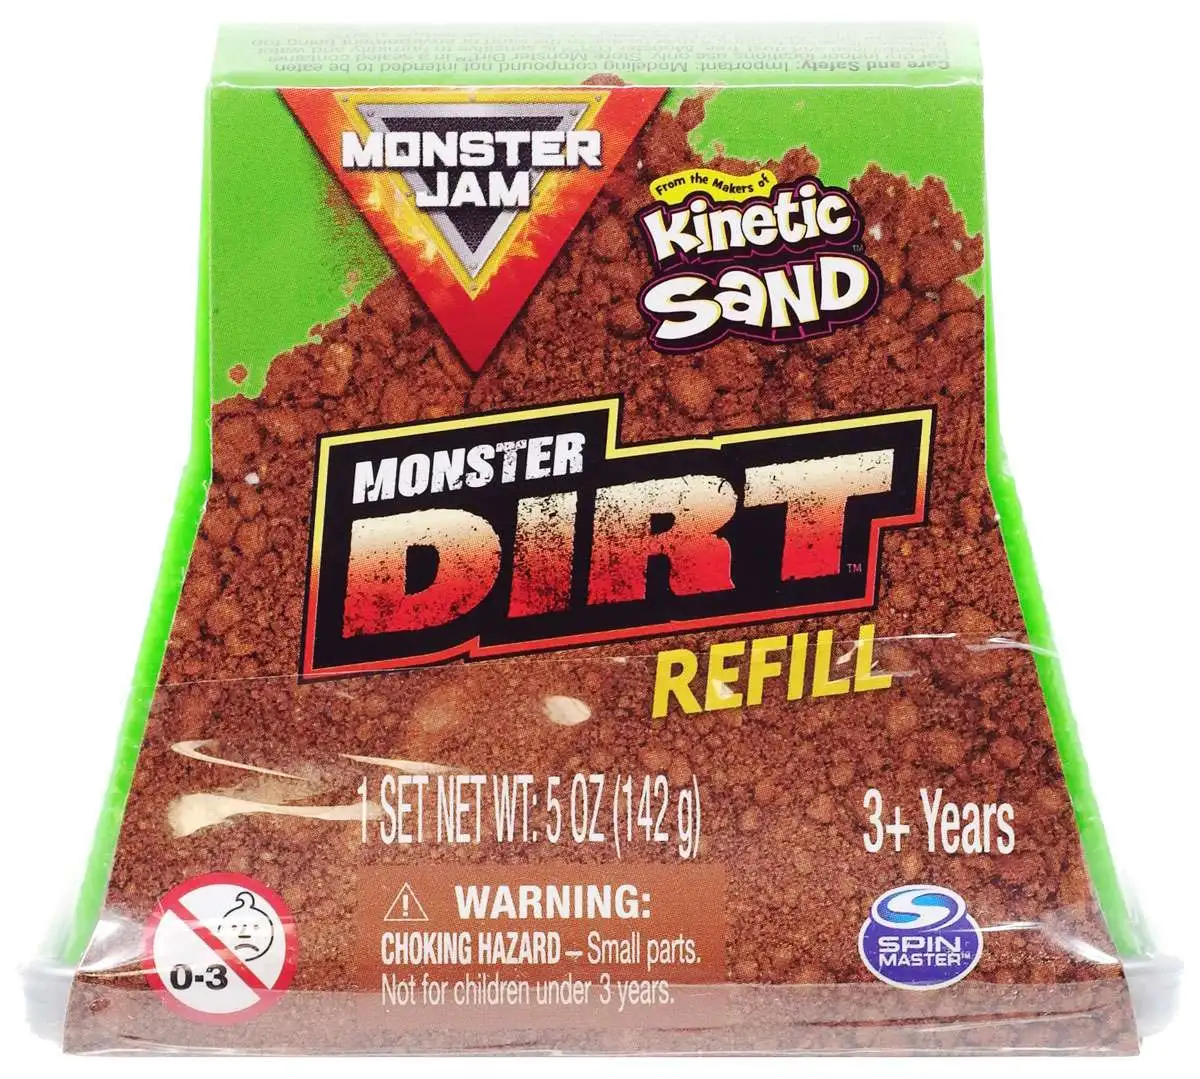 Monster Jam Kinetic Sand Monster Dirt 5 Ounce Refill Pack